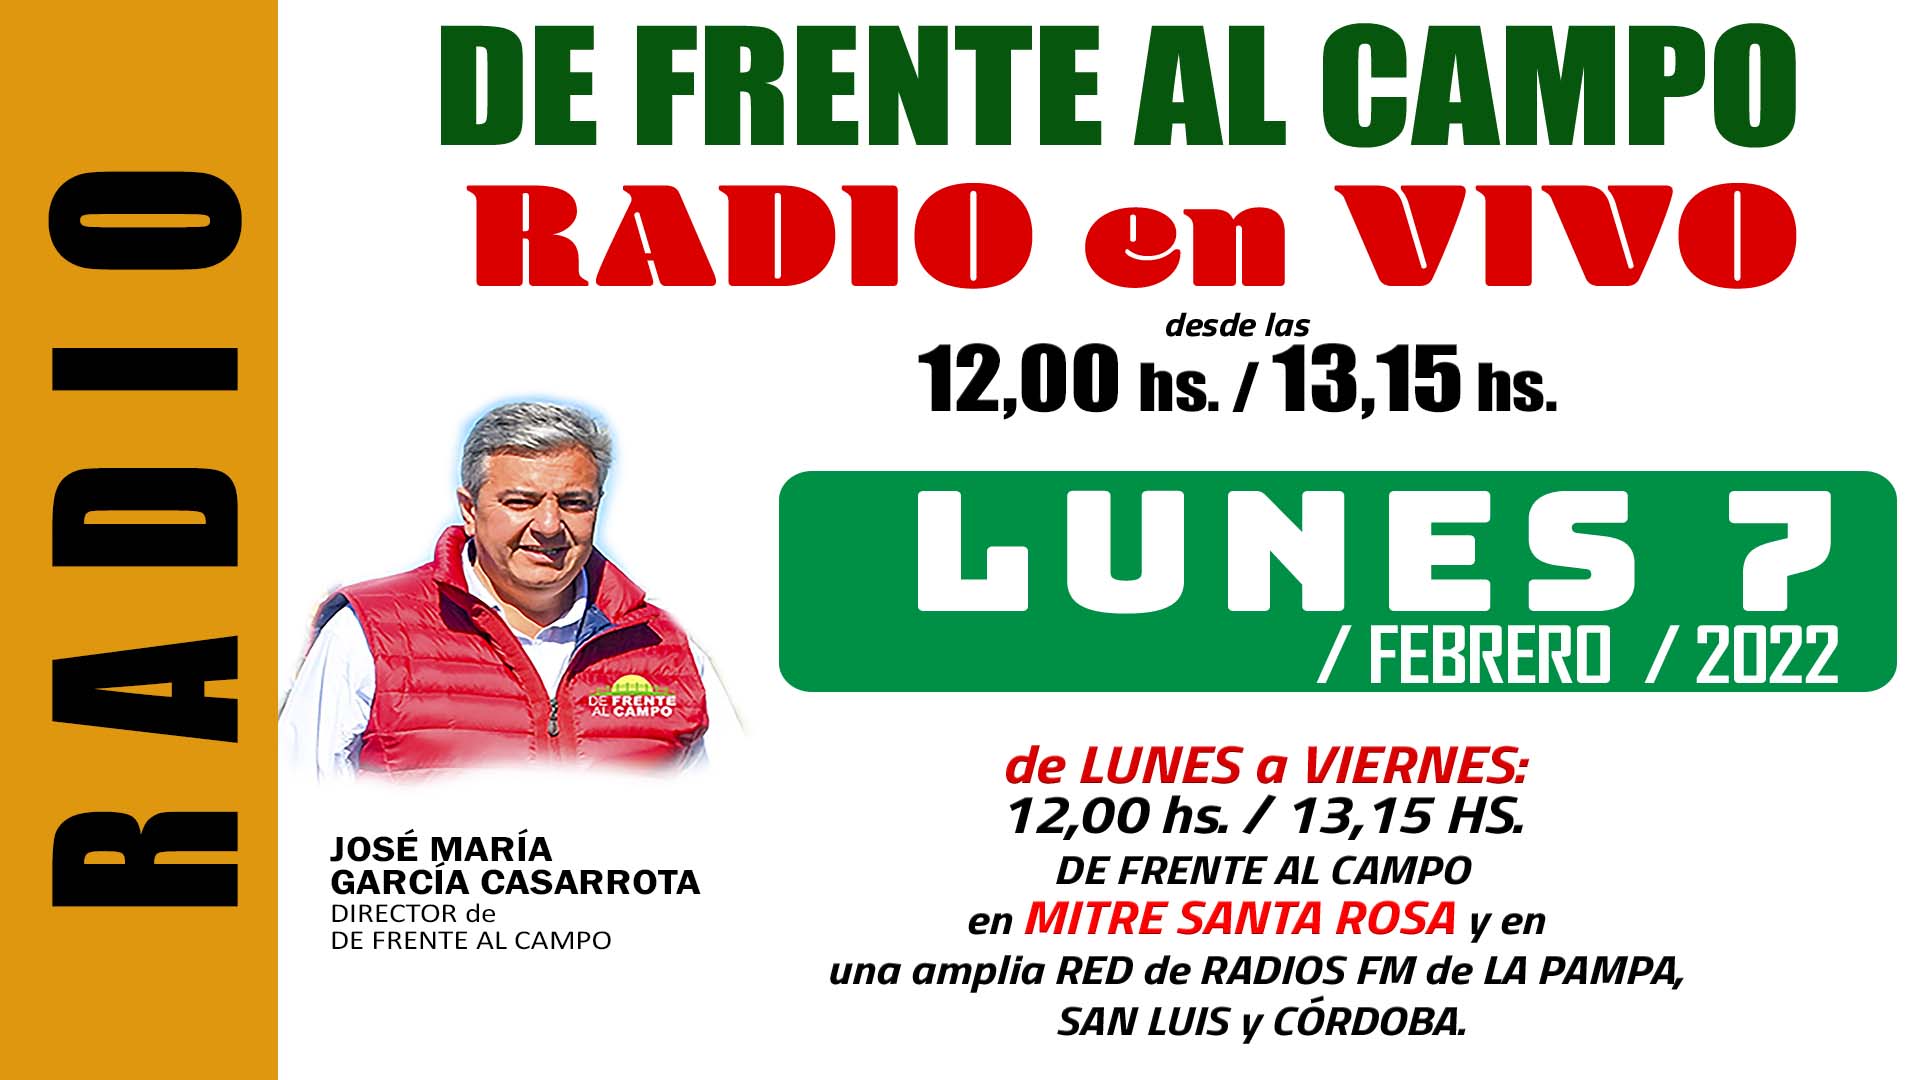 DFC en MITRE SANTA ROSA -FM 100,9 – LUNES 7 / FEBRERO / 2022-.